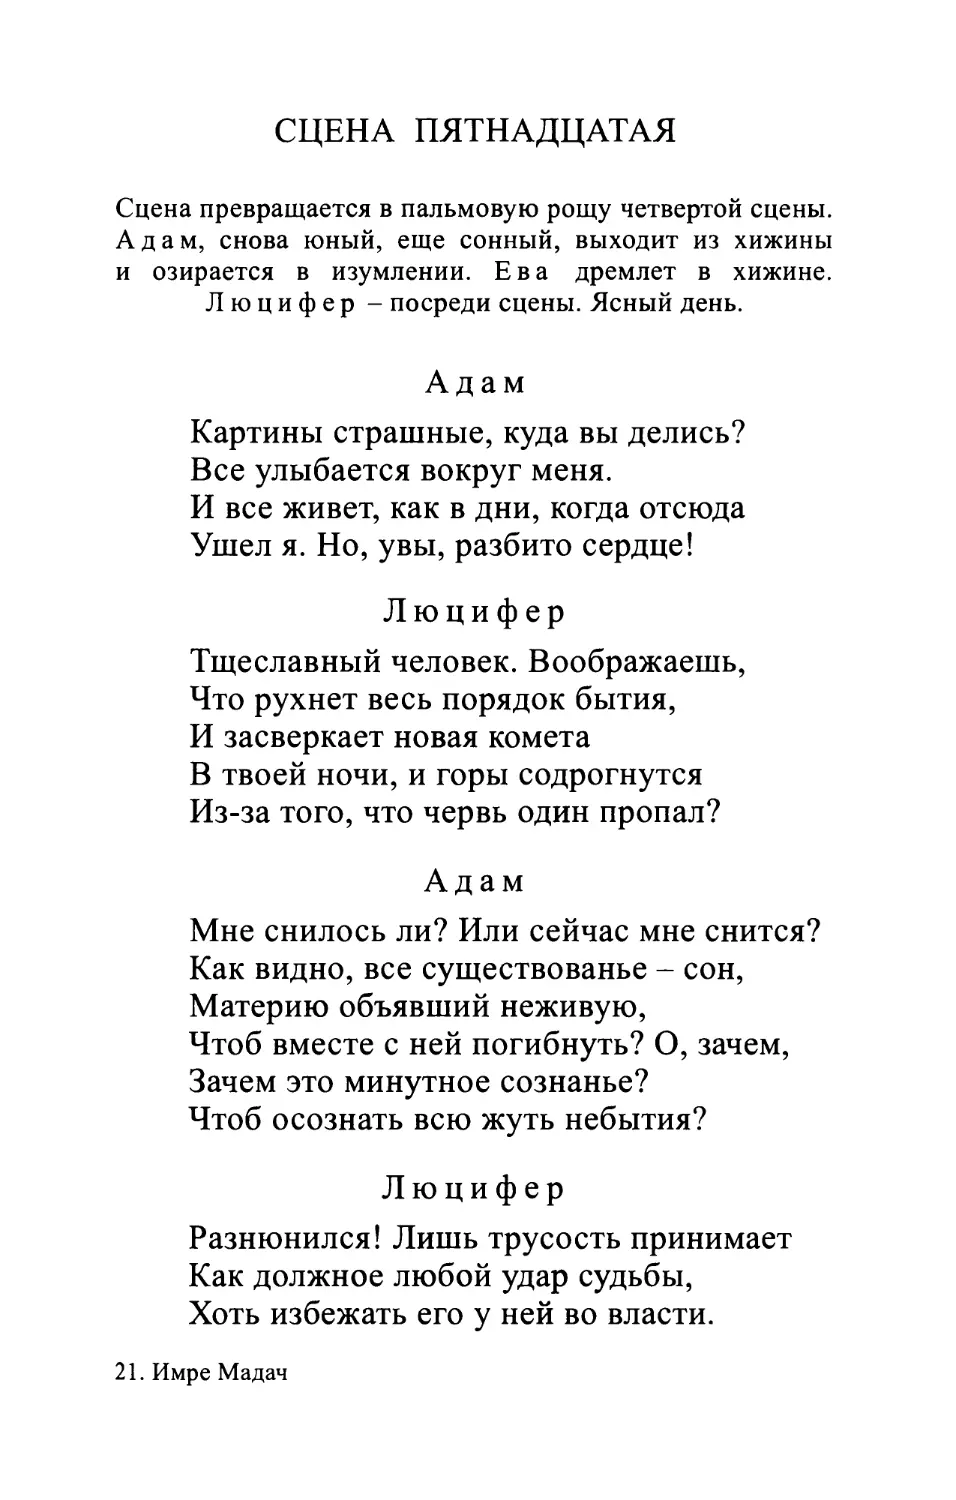 Перевод Л. Мартынова. 1964